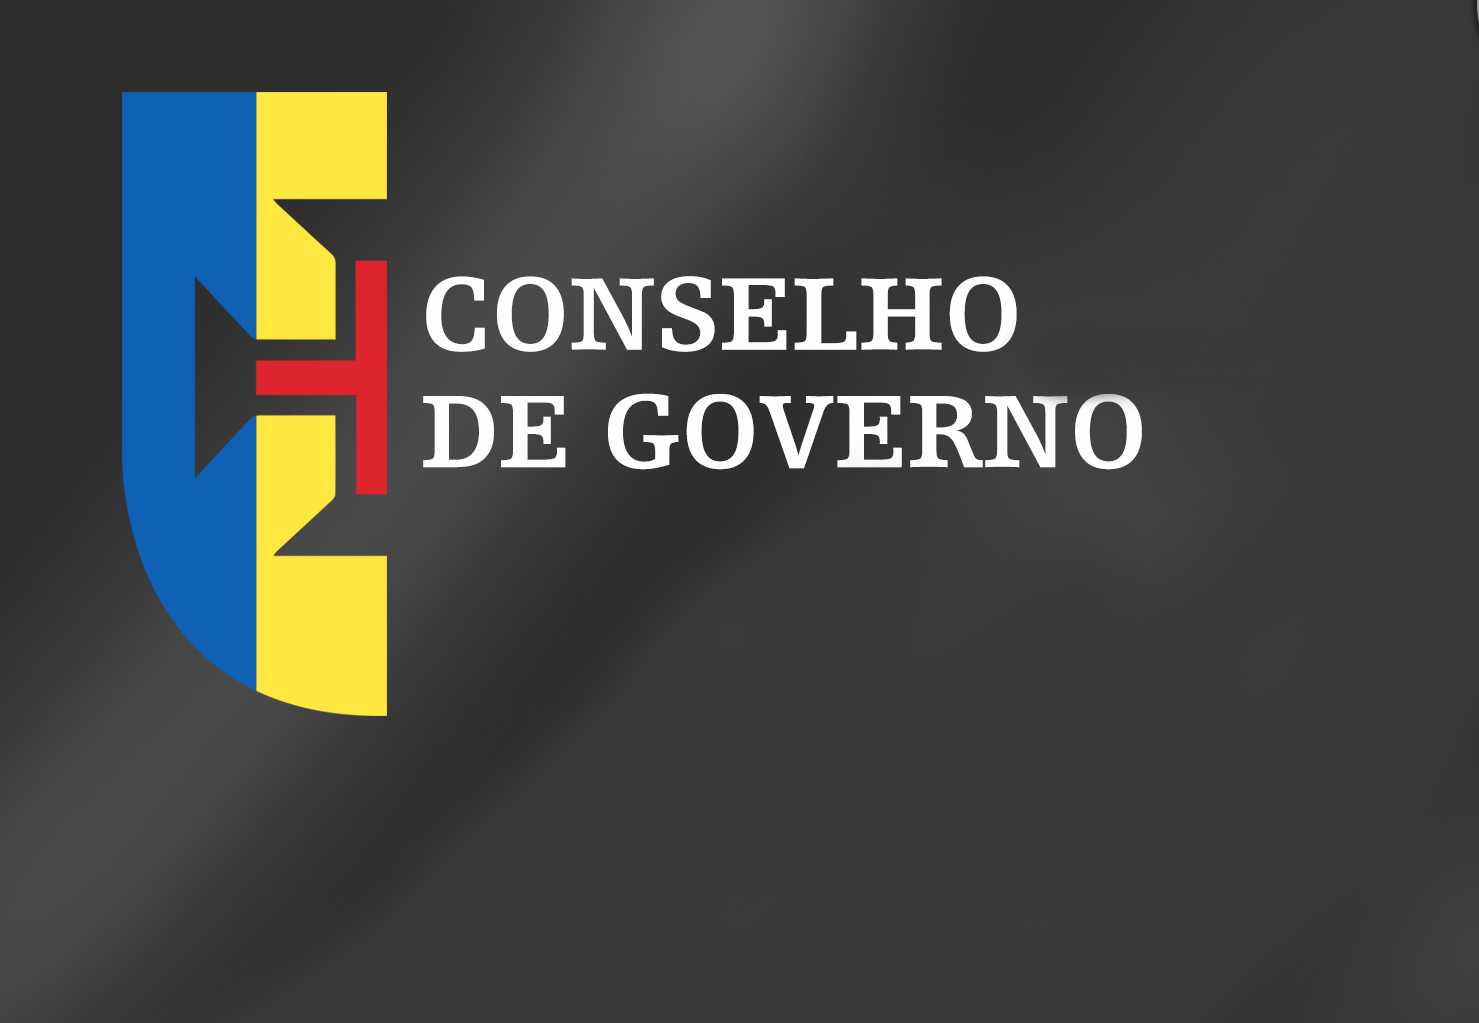 Conclusões Conselho de Governo - 11 de junho 2021